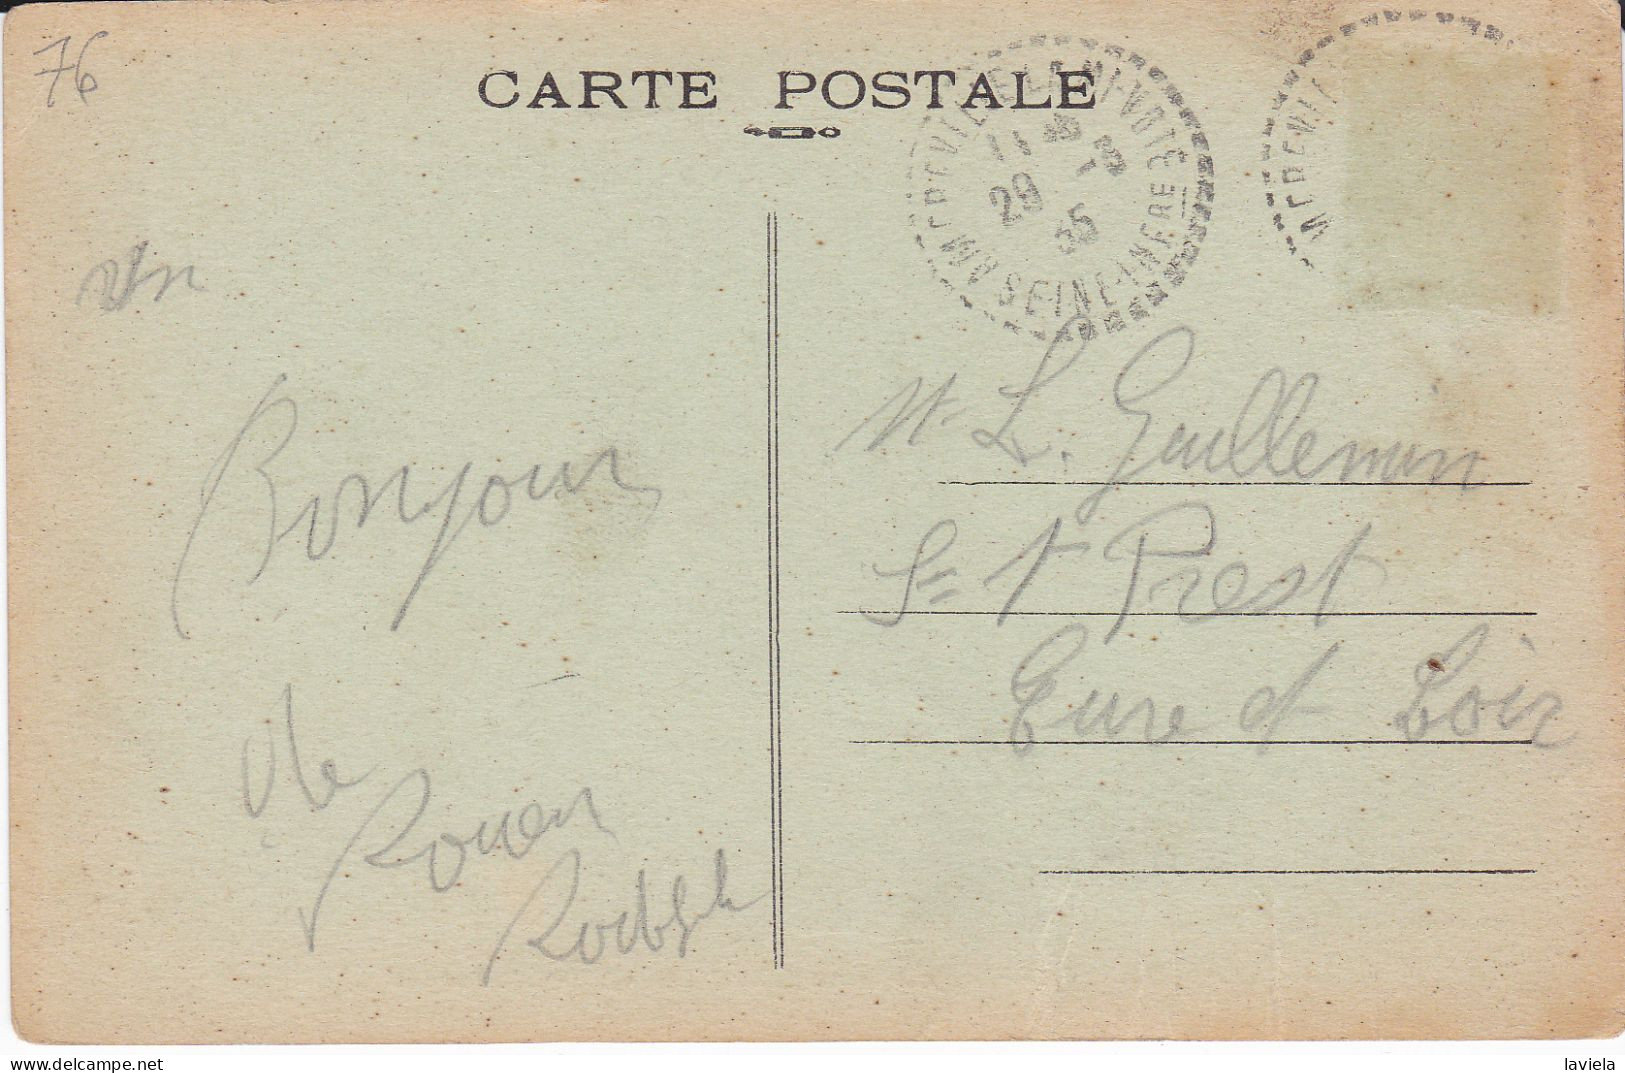 76 SAINT-ADRIEN - Près Rouen (Seine Inf.) - Vallée Du Becquet - Circulée 1935 - Other & Unclassified